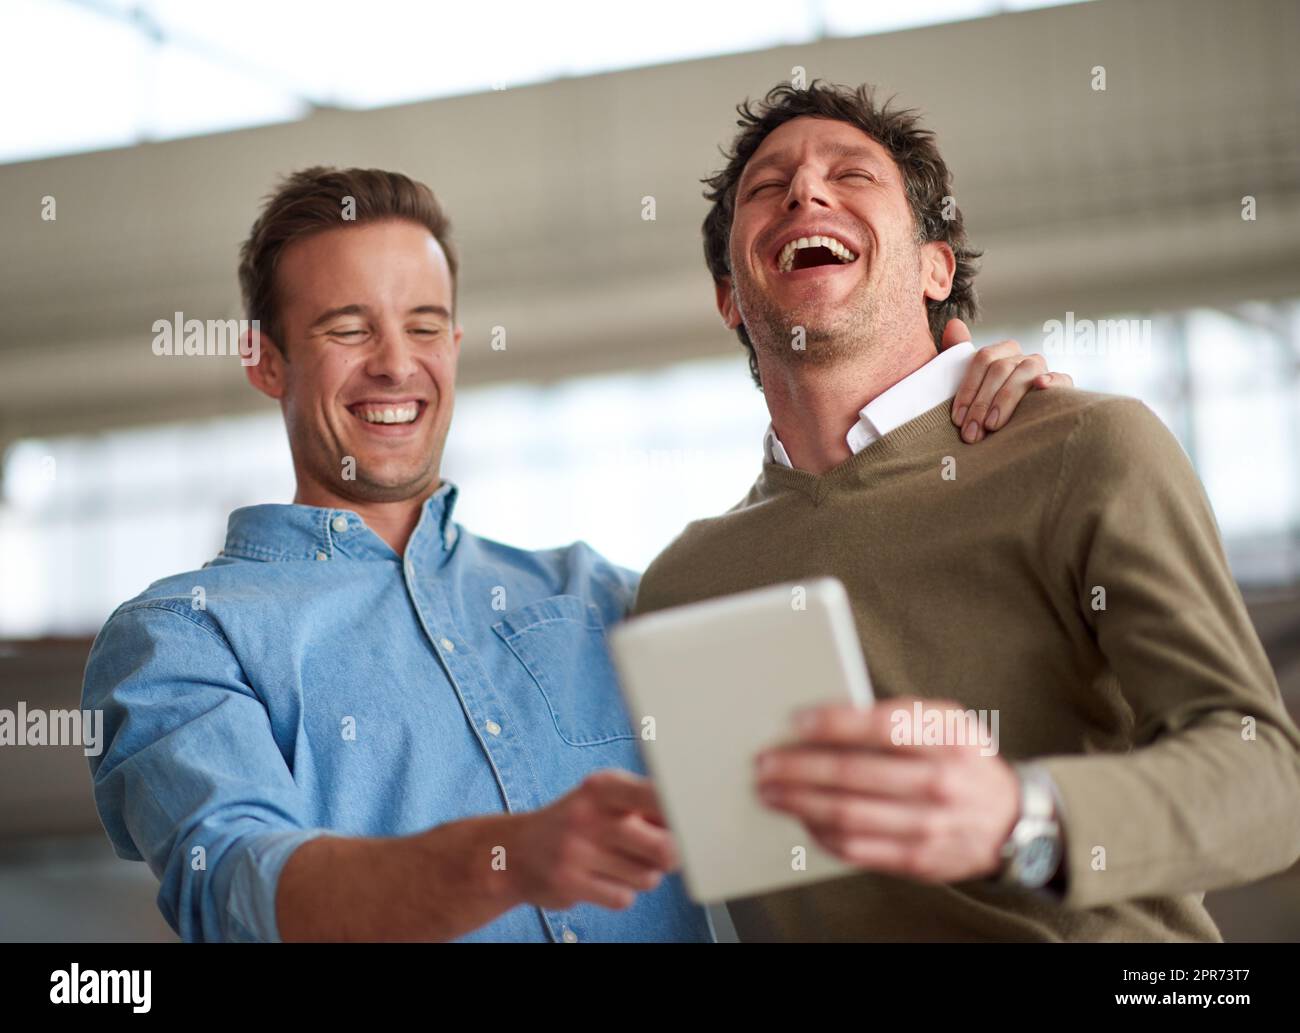 Prendetevi del tempo per una buona vecchia risata. I colleghi maschi ridono a voce alta per qualcosa di divertente su un tablet digitale nel loro ufficio. Foto Stock